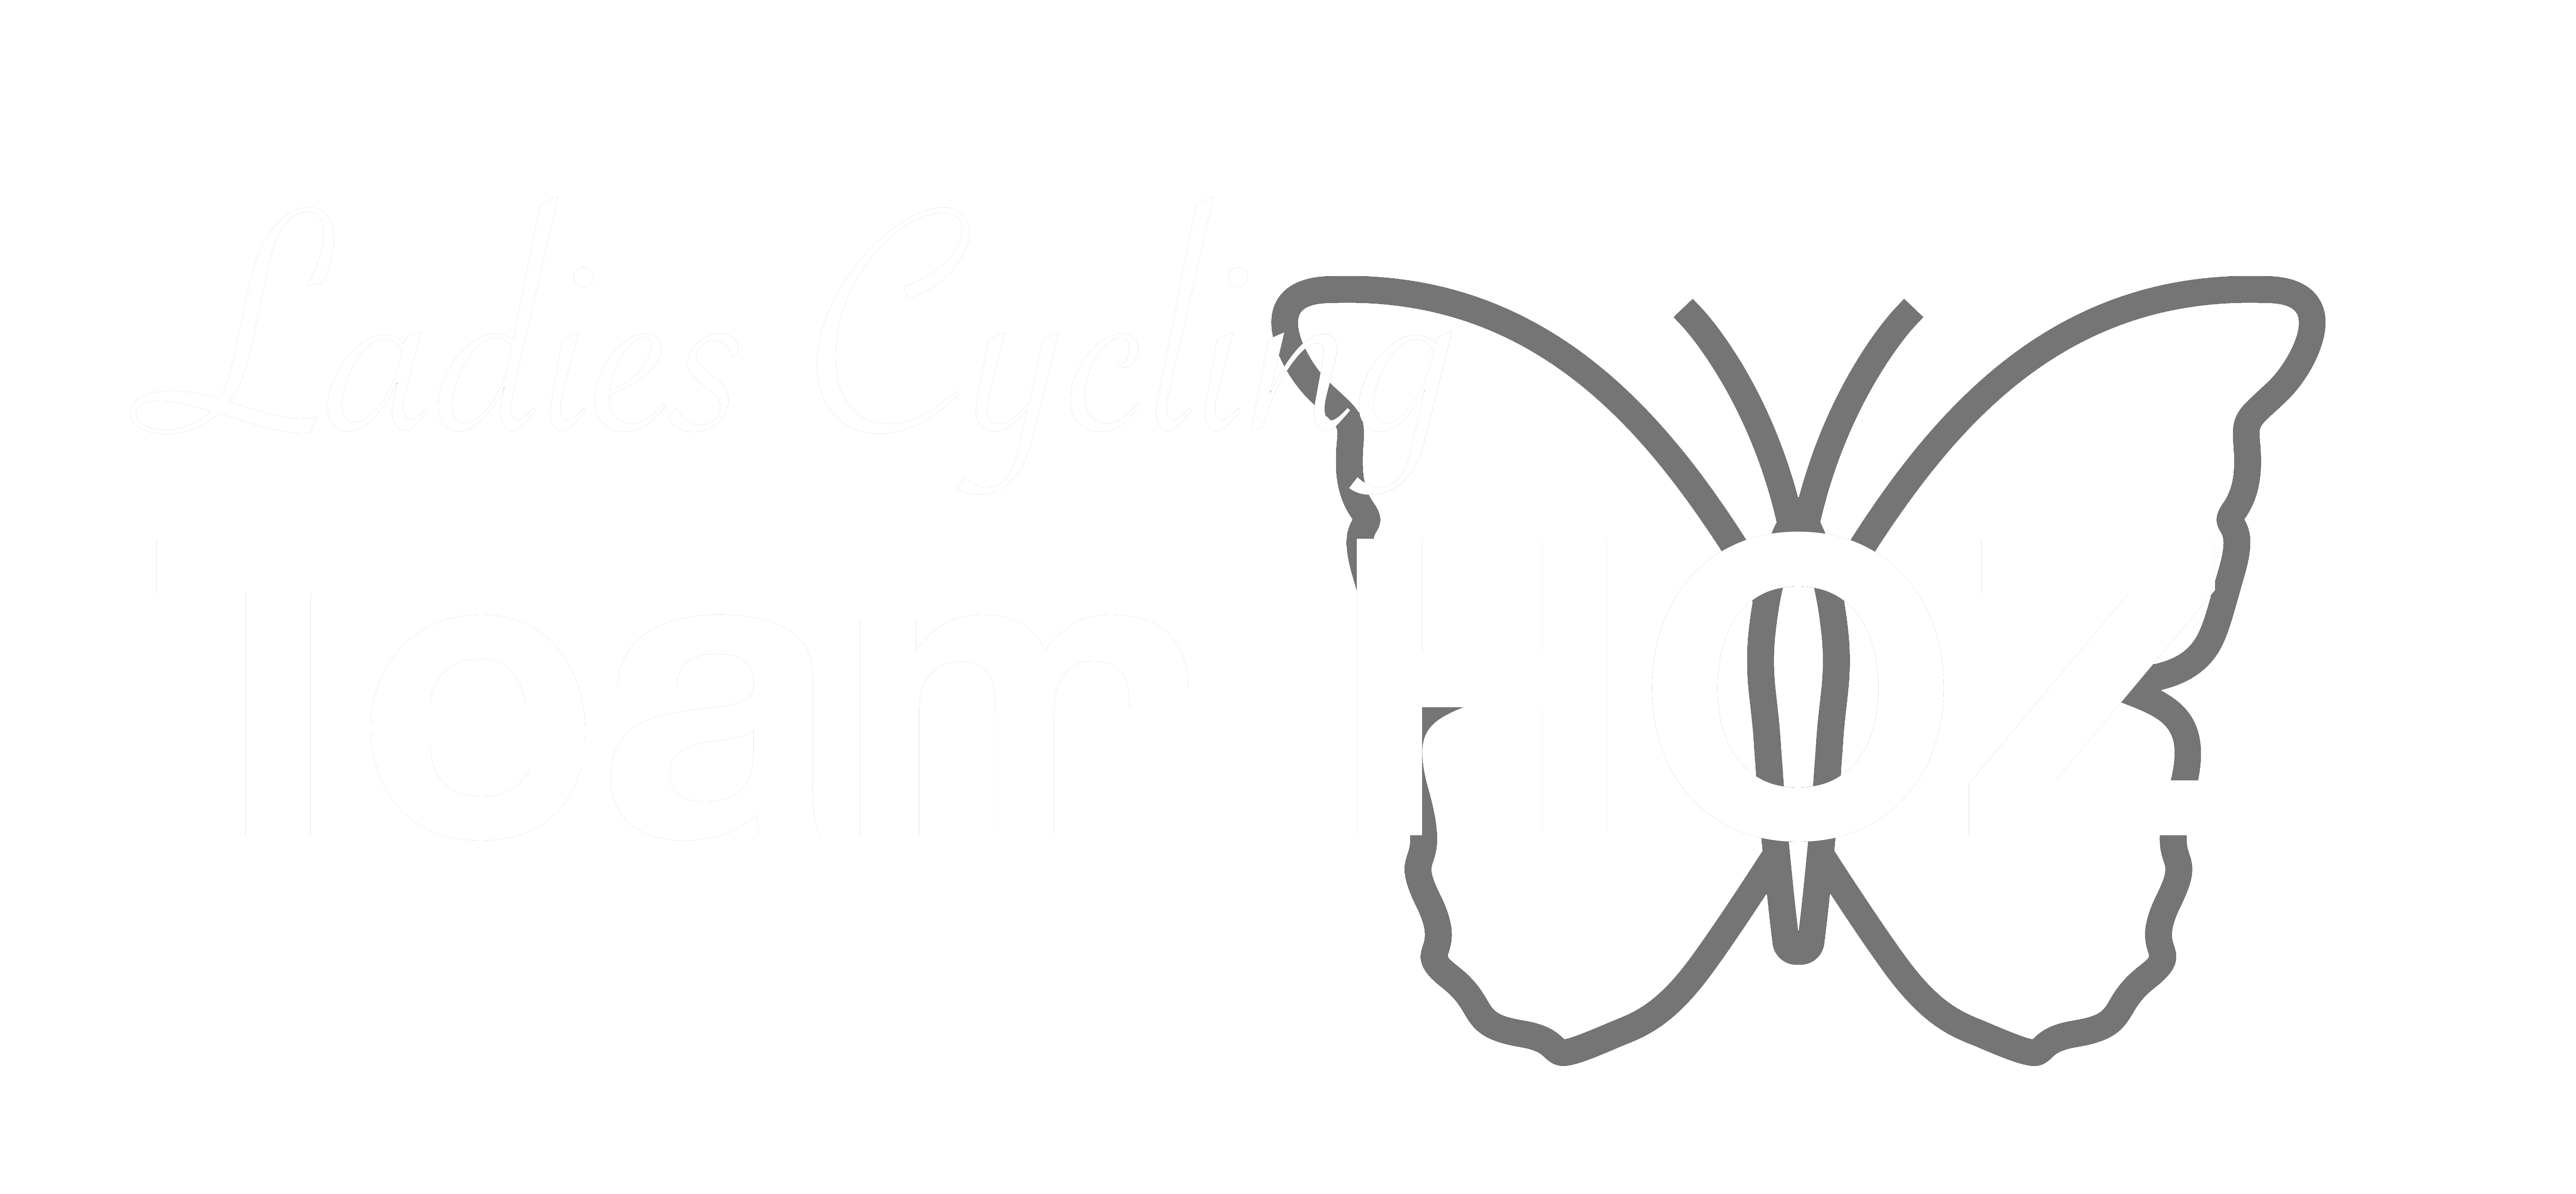 Ladies Cycling Team Hoz